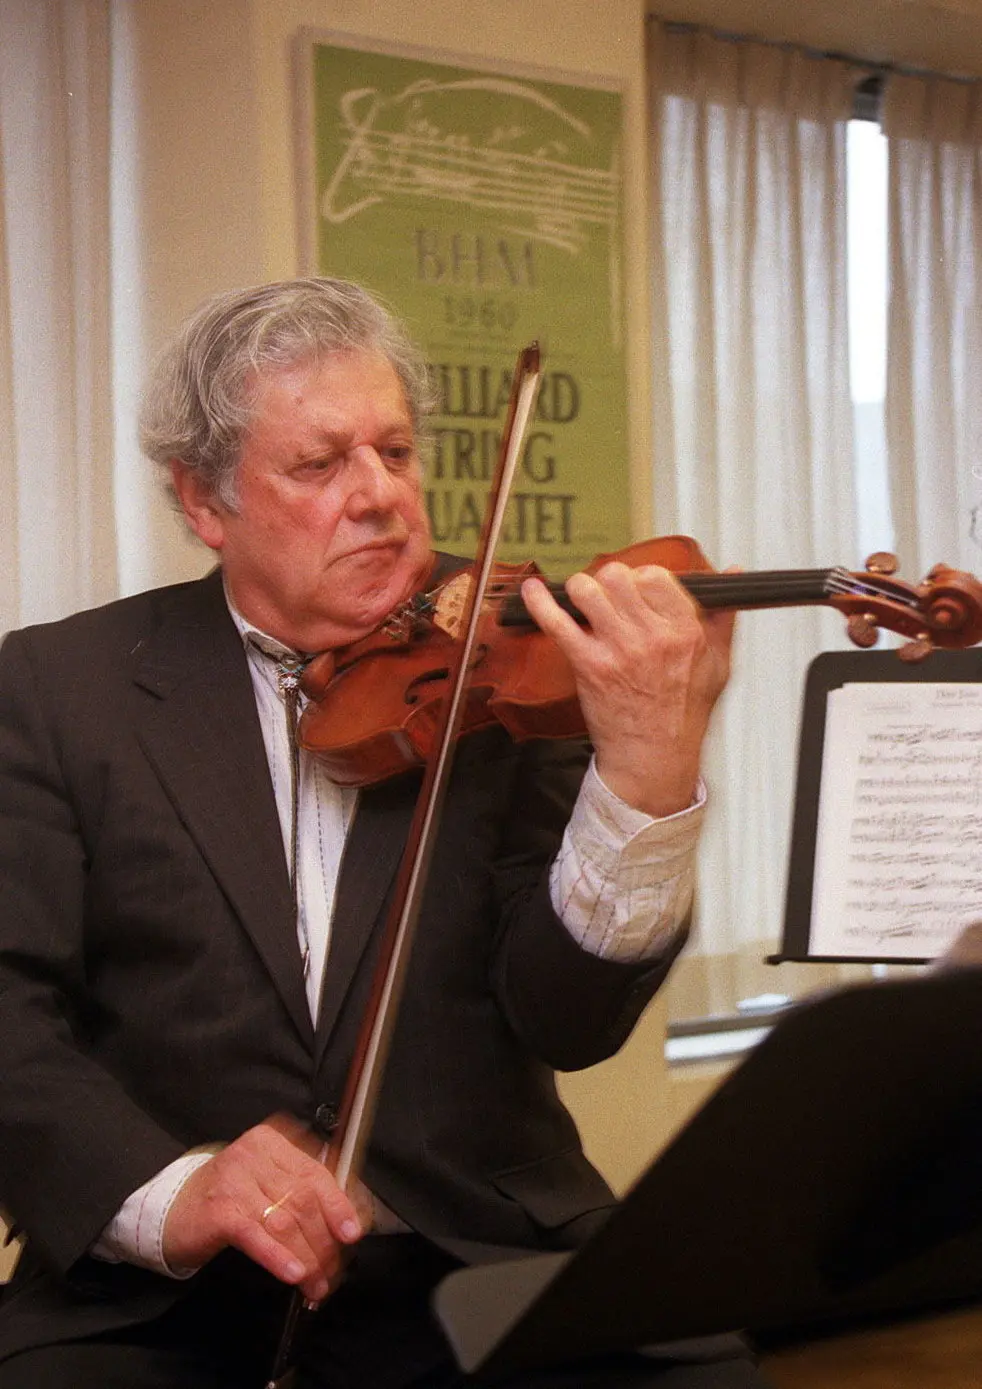 Robert Mann, foi o primeiro violinista fundador do Juilliard String Quartet, o conjunto de renome internacional que em meados do século ajudou a gerar um renascimento da música de câmara nos Estados Unidos, a lista original incluía o segundo violinista Robert Koff, o violista Raphael Hillyer e o violoncelista Arthur Winograd